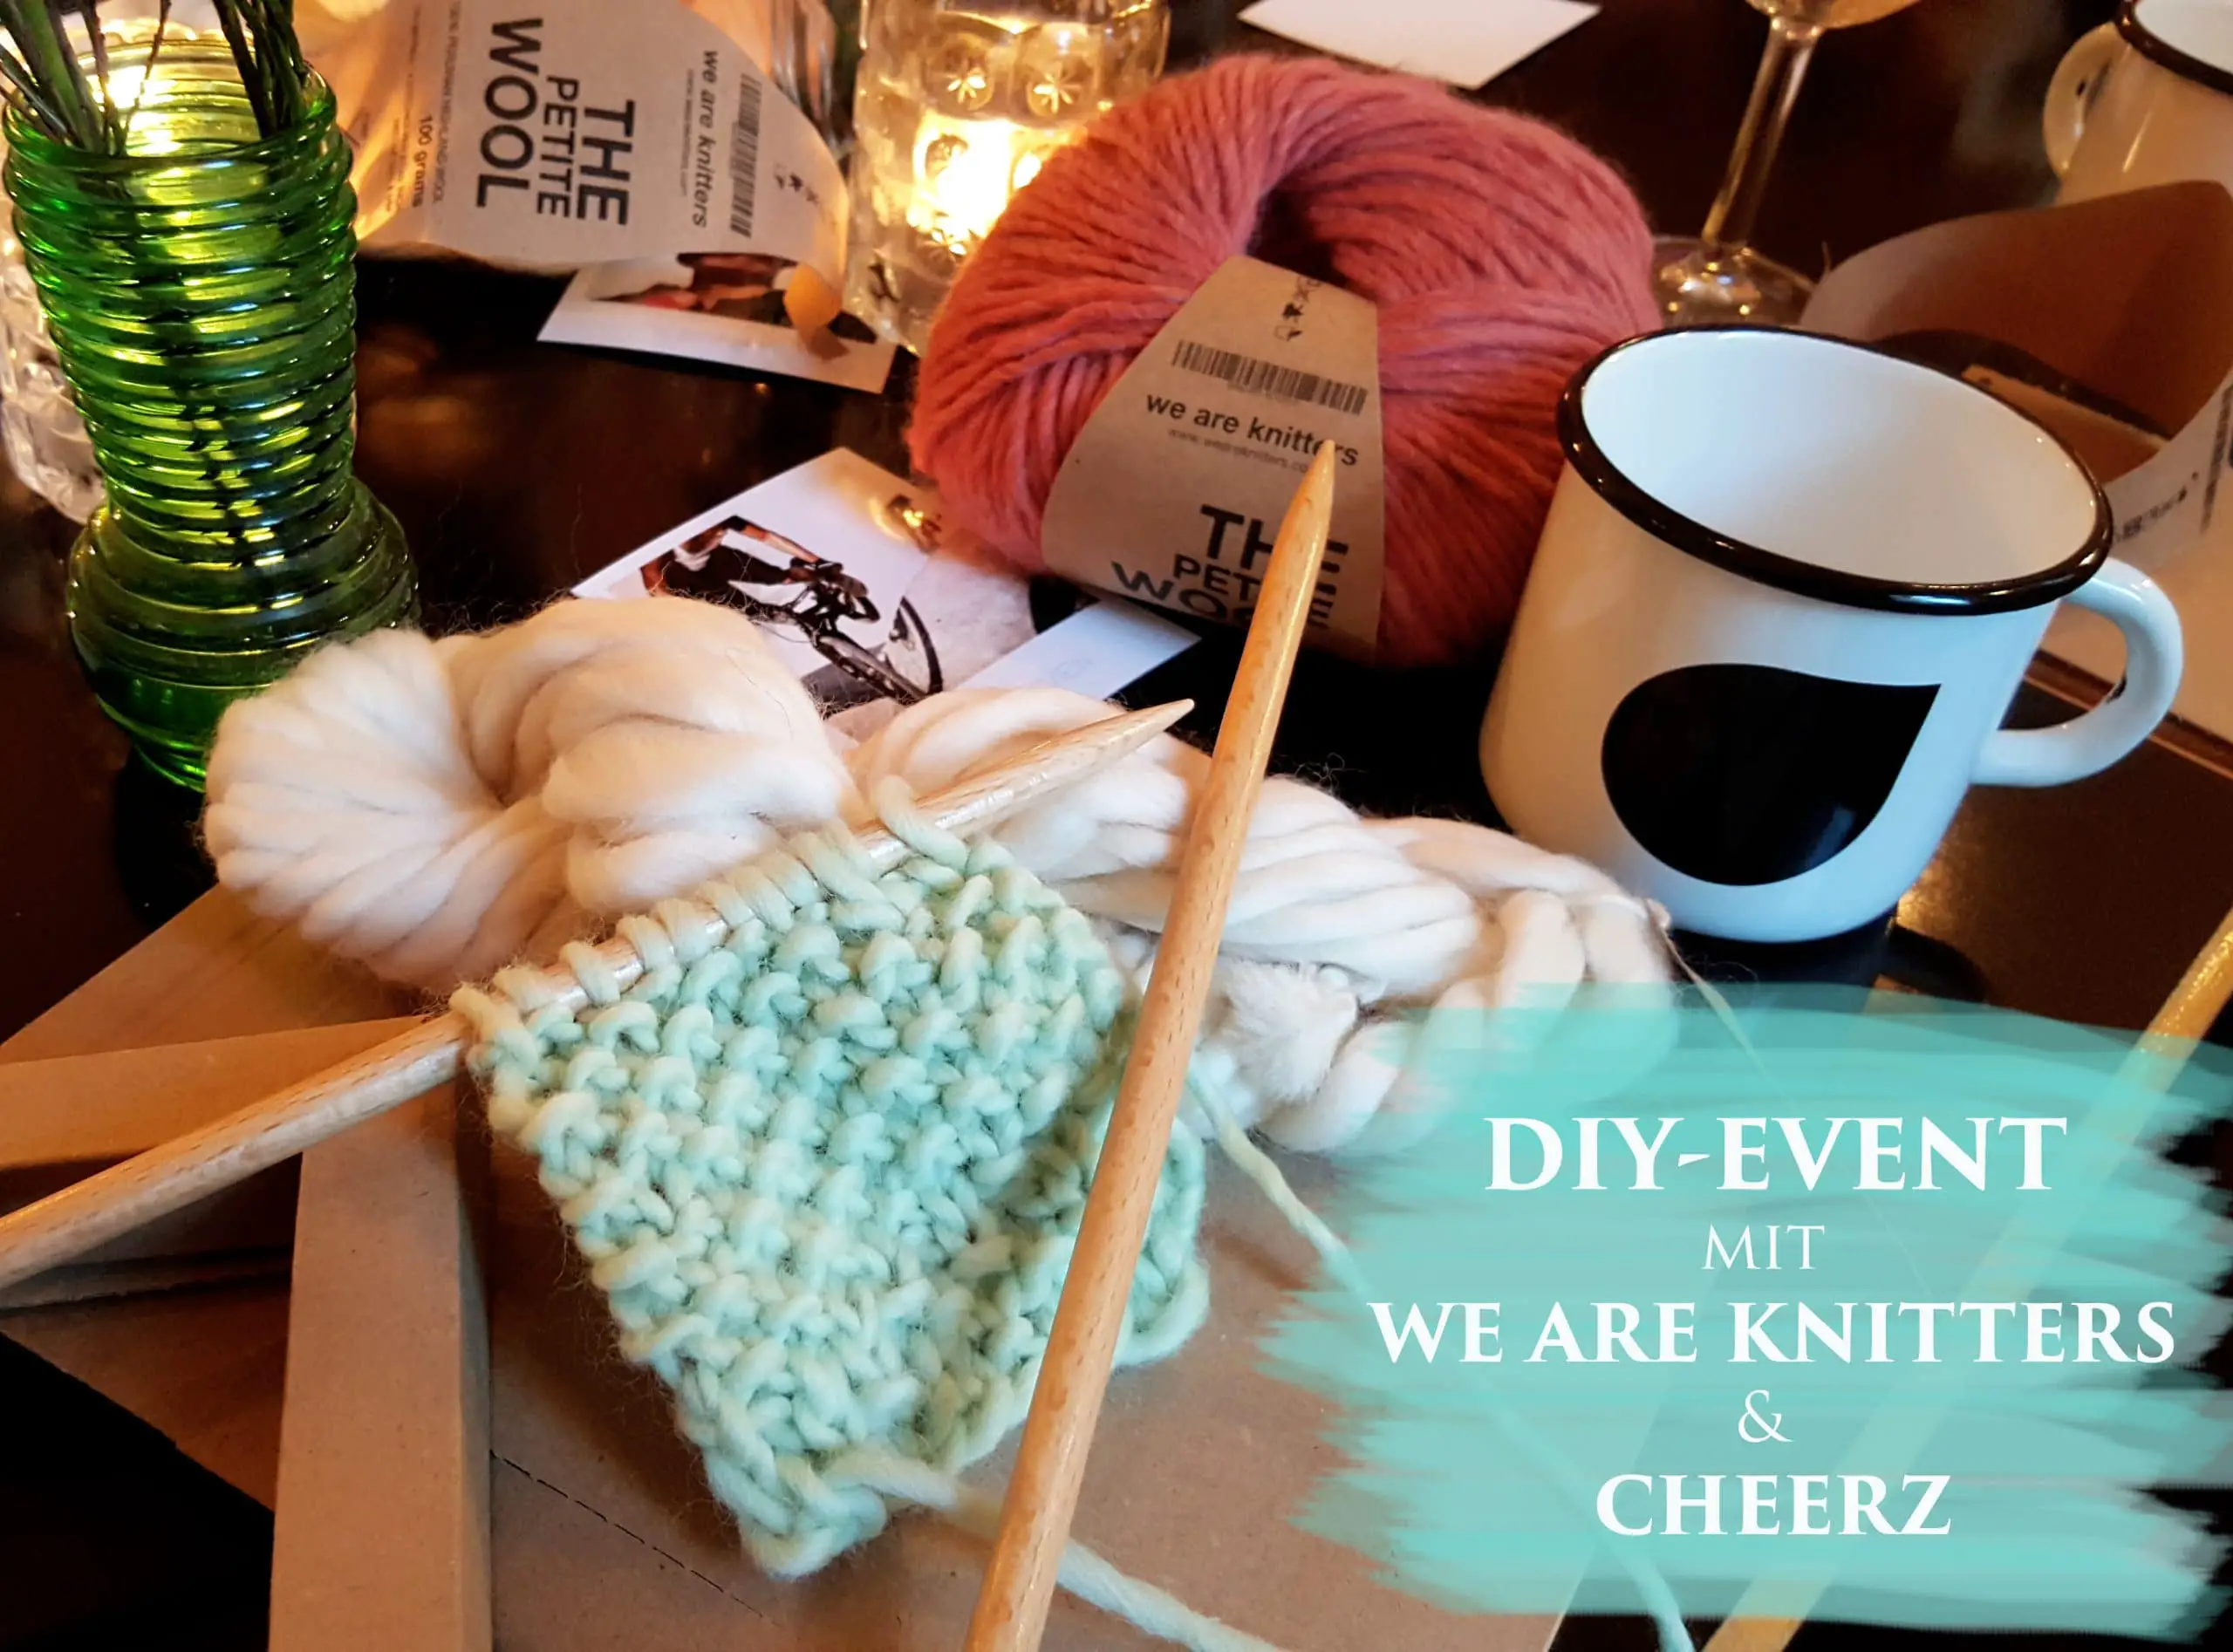 DIY Workshop mit We are knitters und cheerz